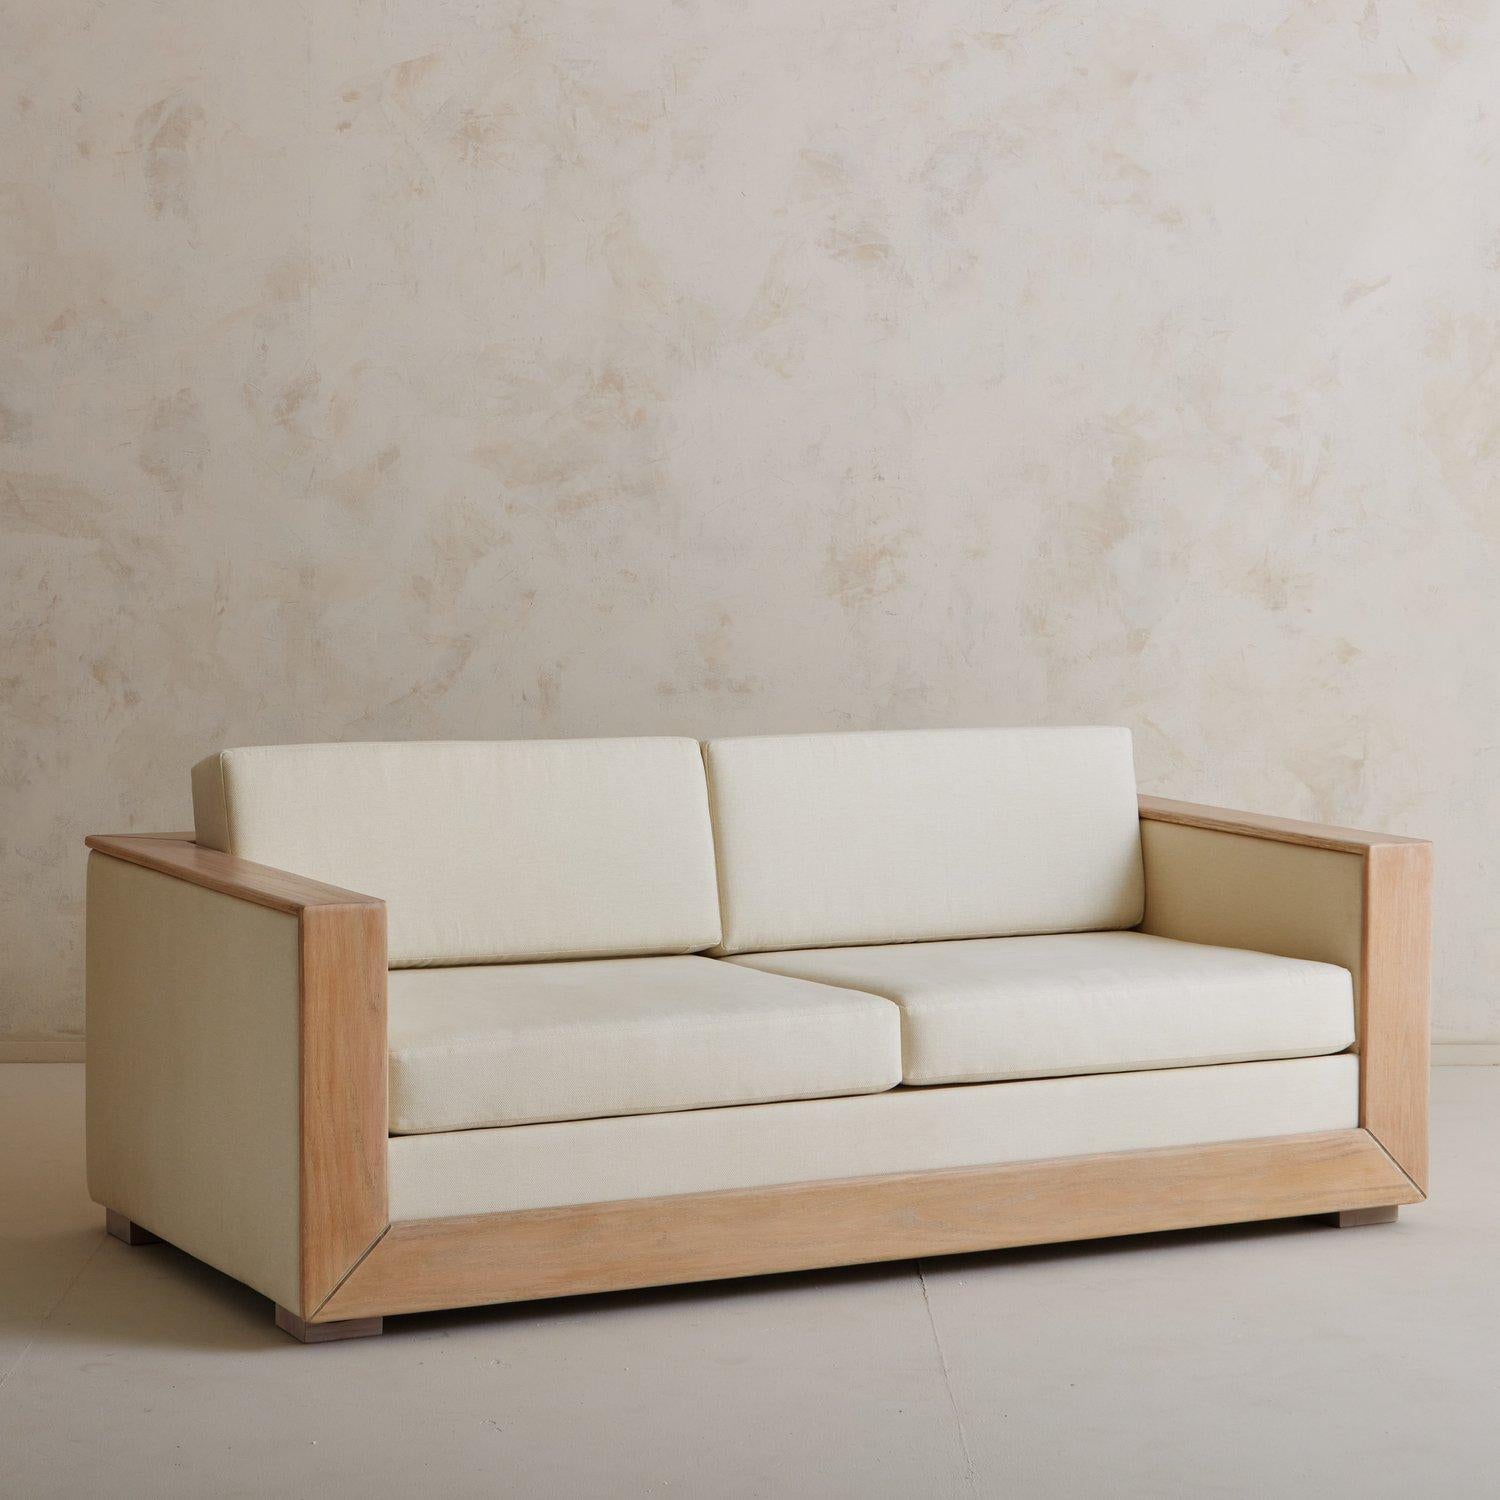 Ein Sofa im Art-Déco-Stil, neu gepolstert mit einem cremefarbenen Strukturstoff. Dieses Sofa hat eine Verkleidung aus gebrannter Eiche und steht auf vier Holzfüßen. Wir lieben die kantigen Linien und das elegante Profil dieses Klassikers. Stammt aus